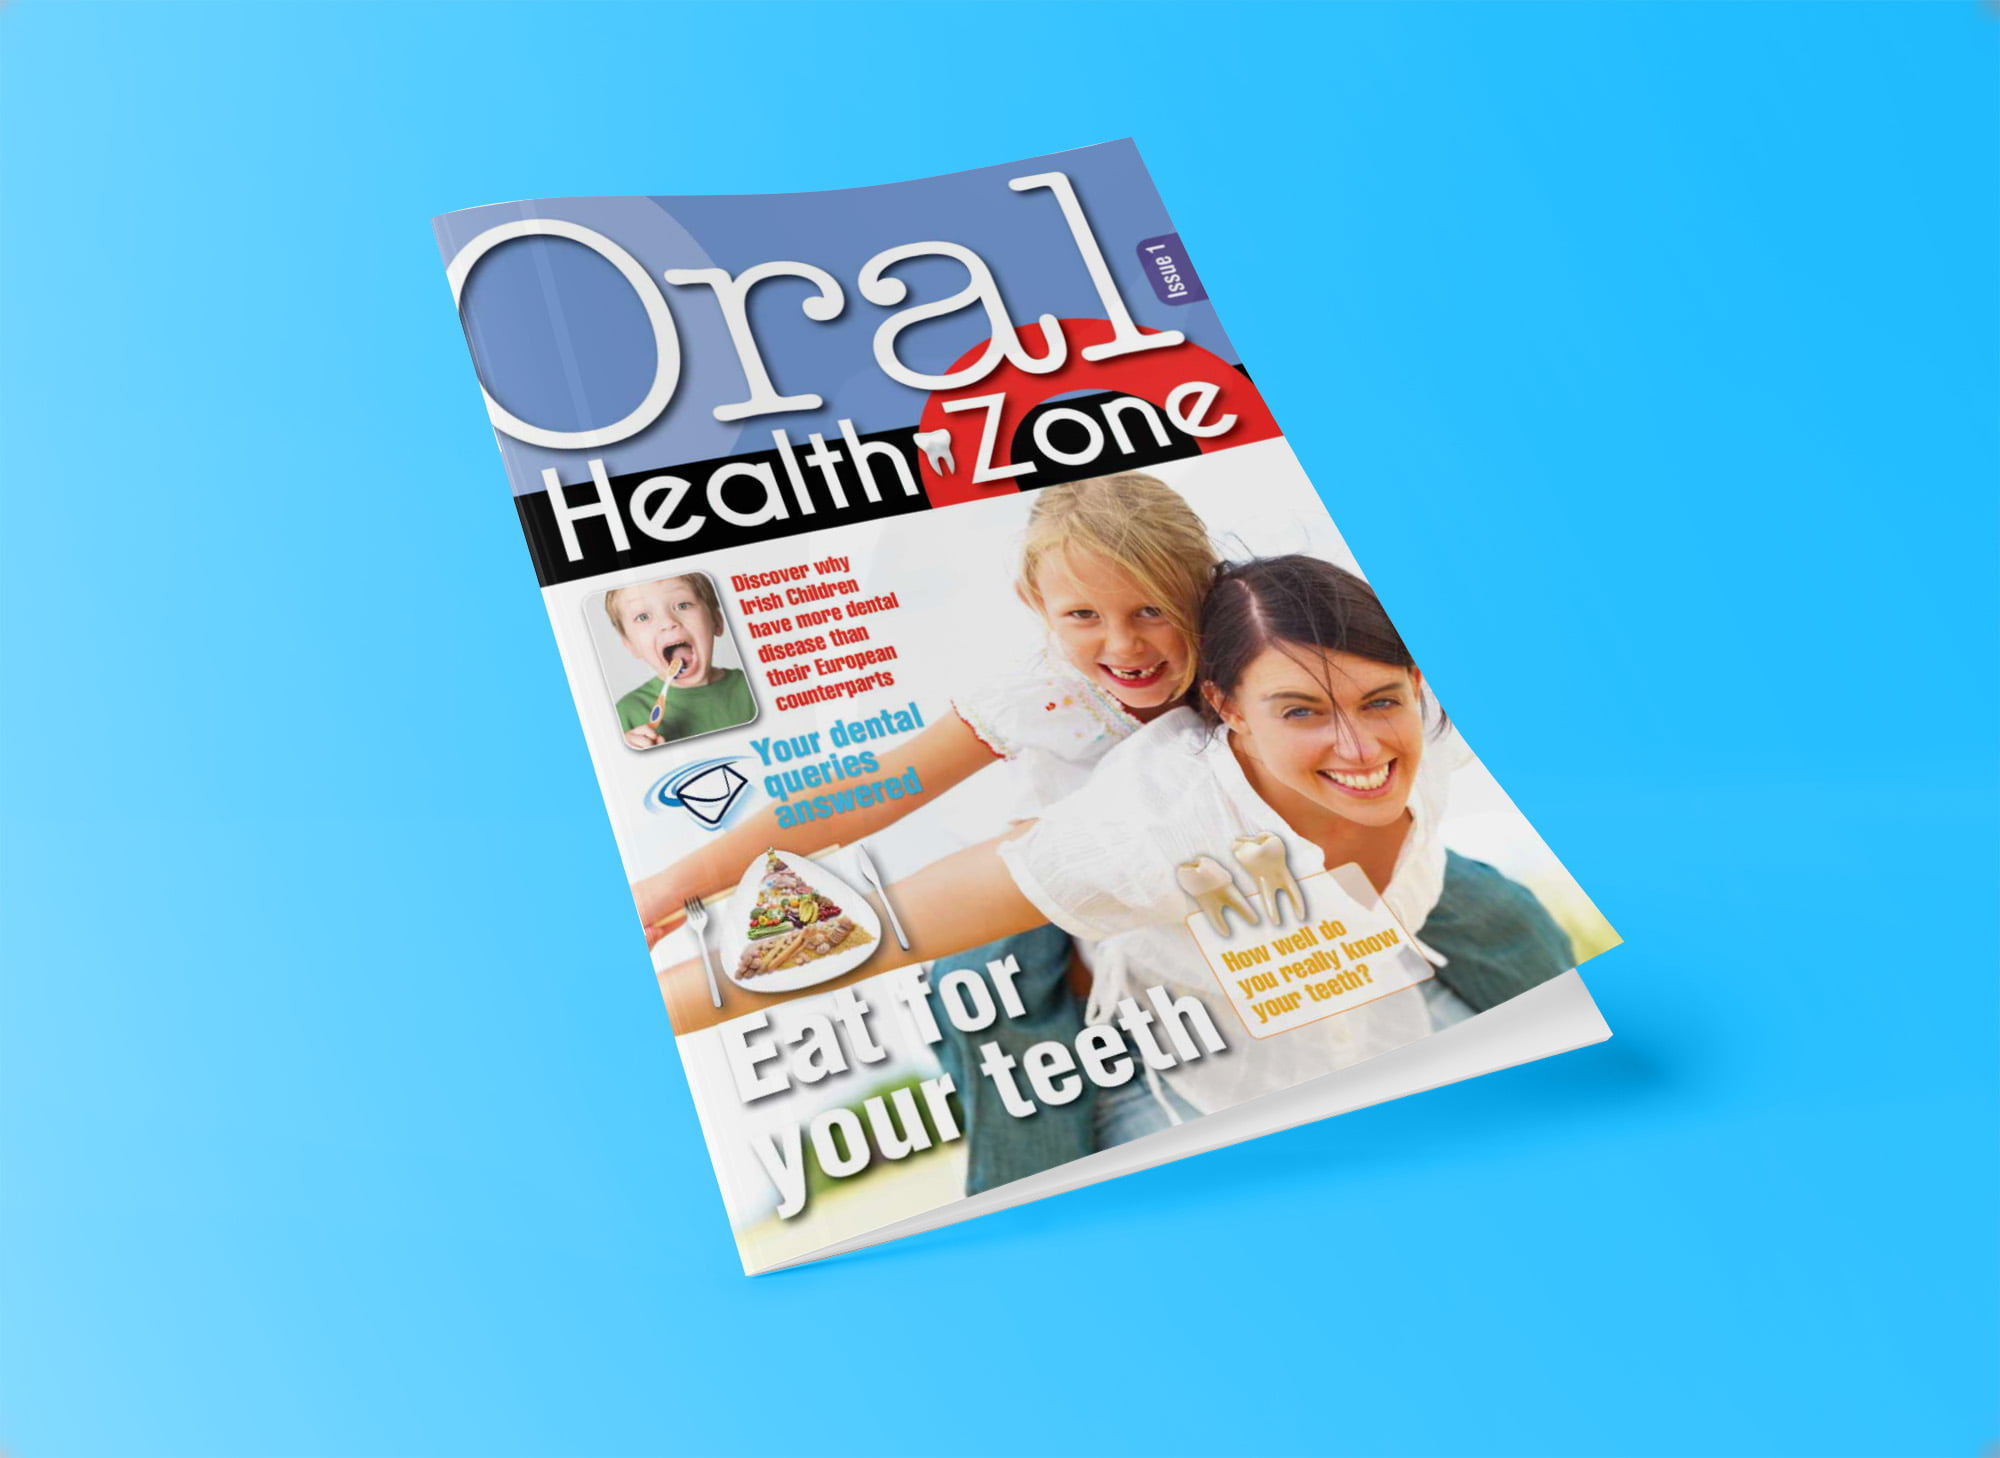 oral health zone brochure 1